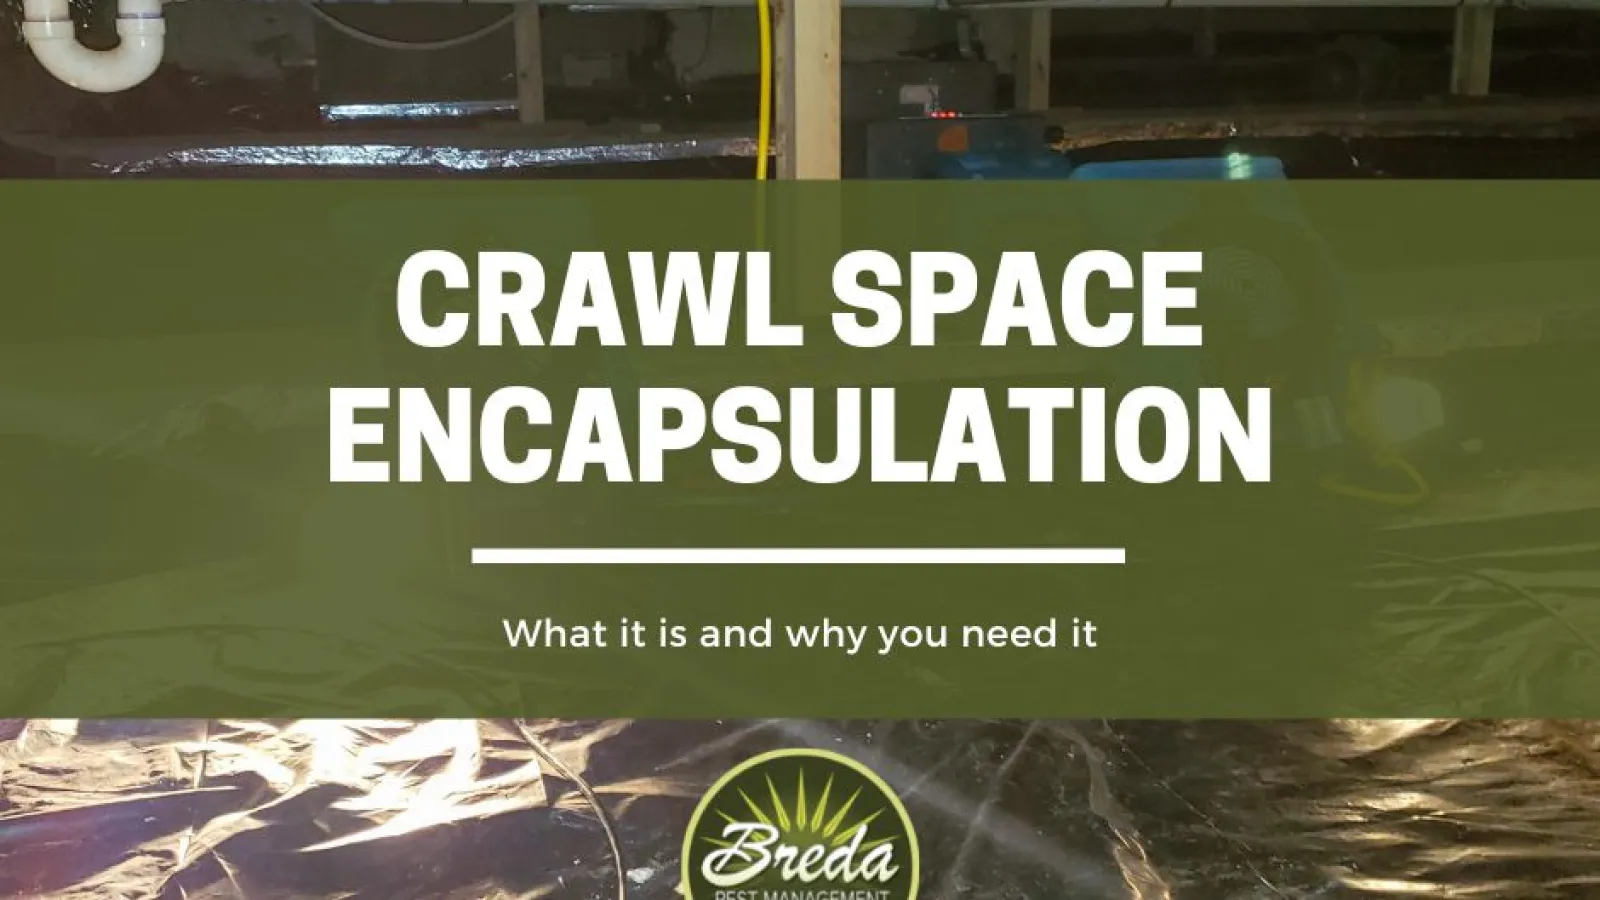 crawl space encapsulation BREDA pest management